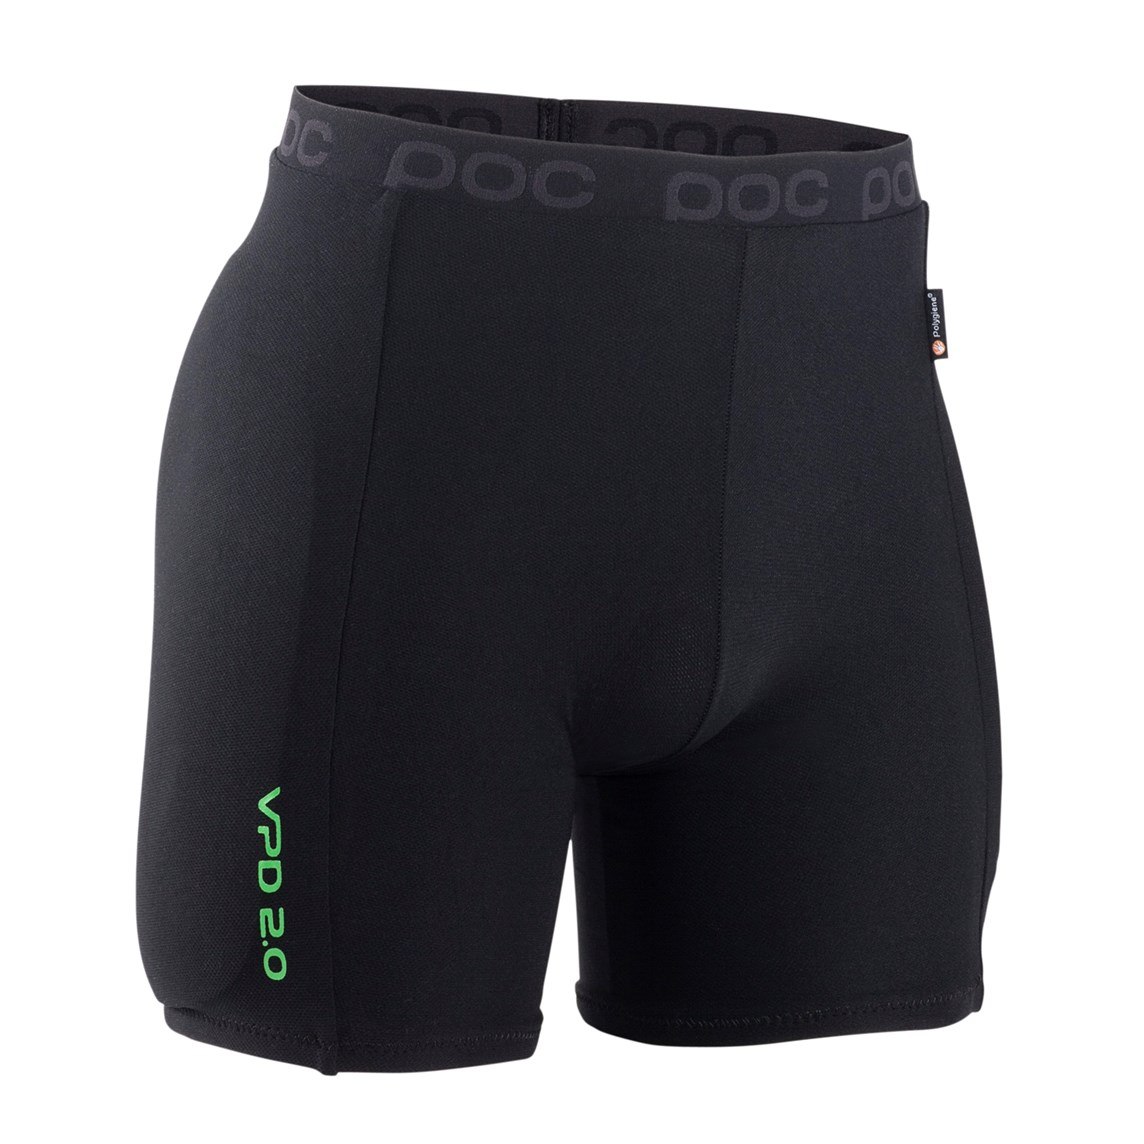 Immagine prodotto da POC Hip VPD 2.0 Shorts Protector Shorts - 9002 black